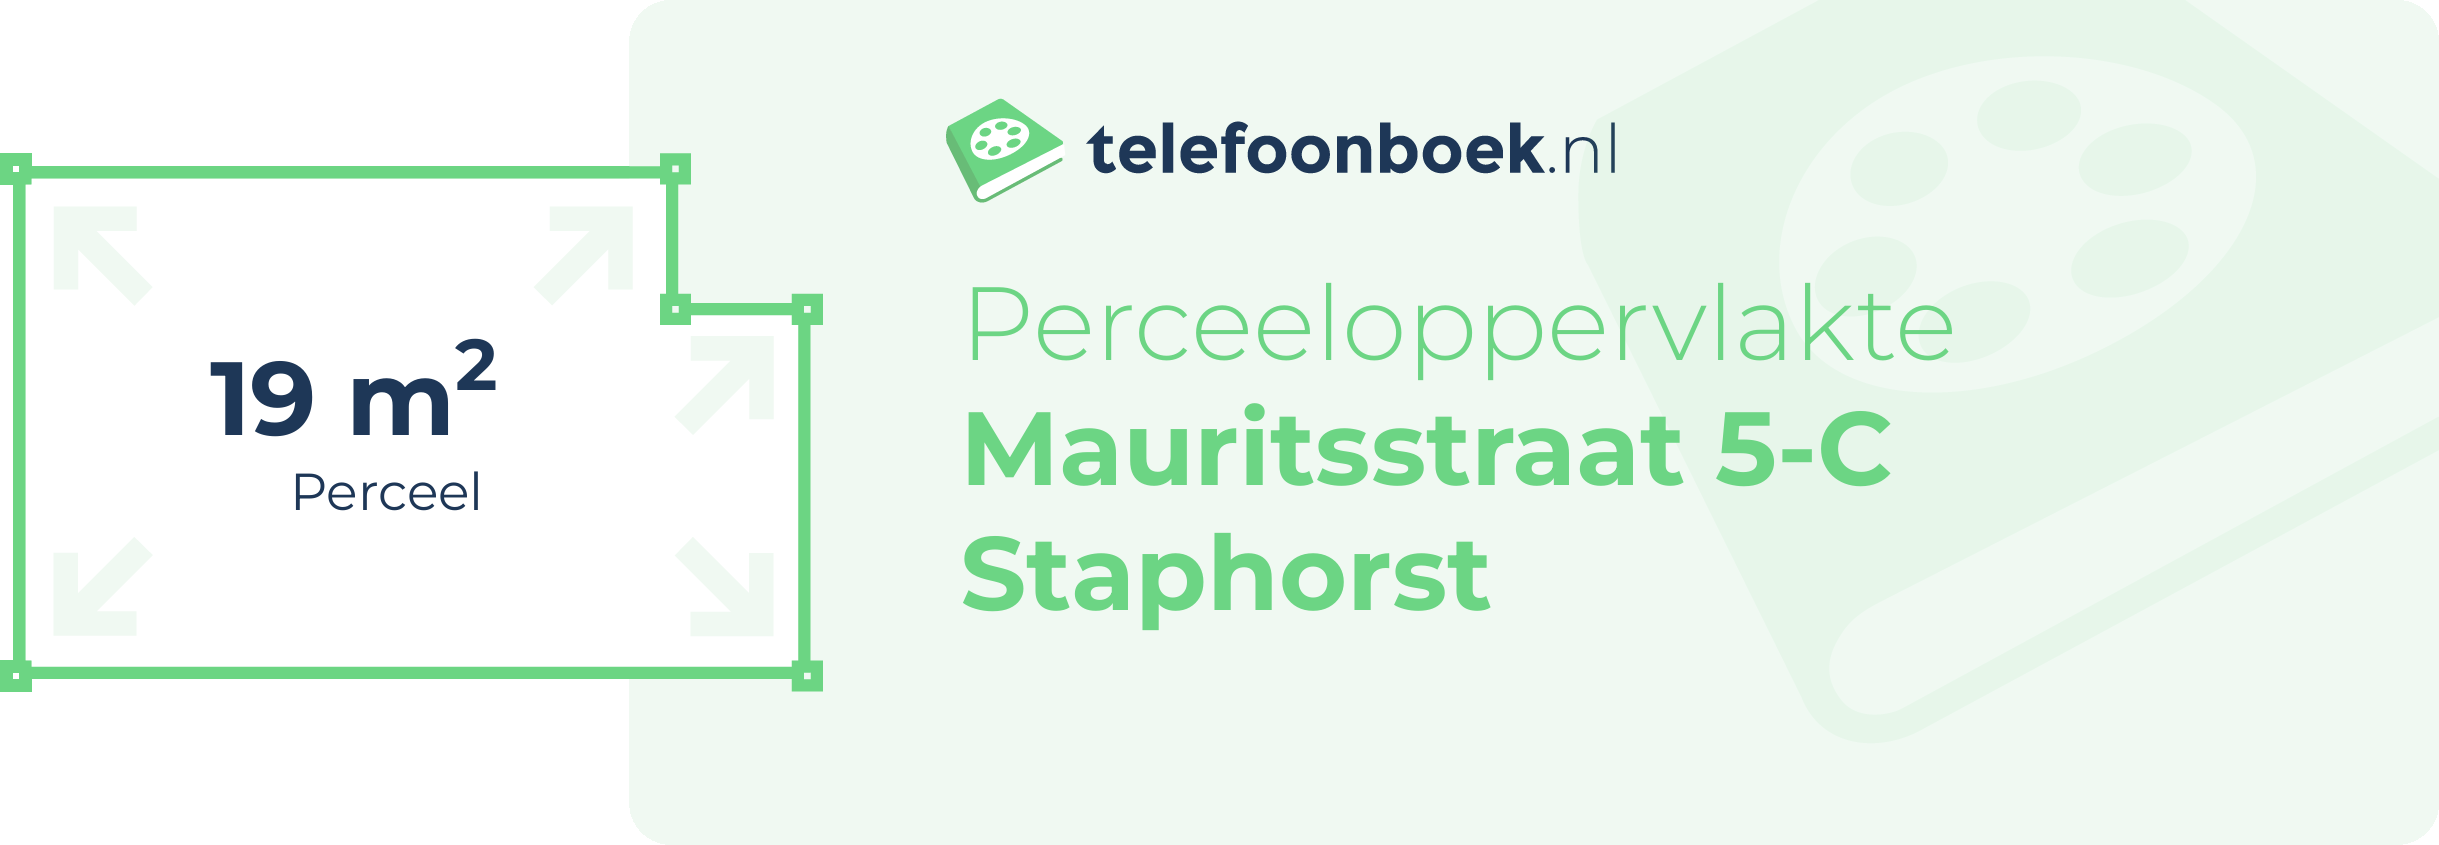 Perceeloppervlakte Mauritsstraat 5-C Staphorst